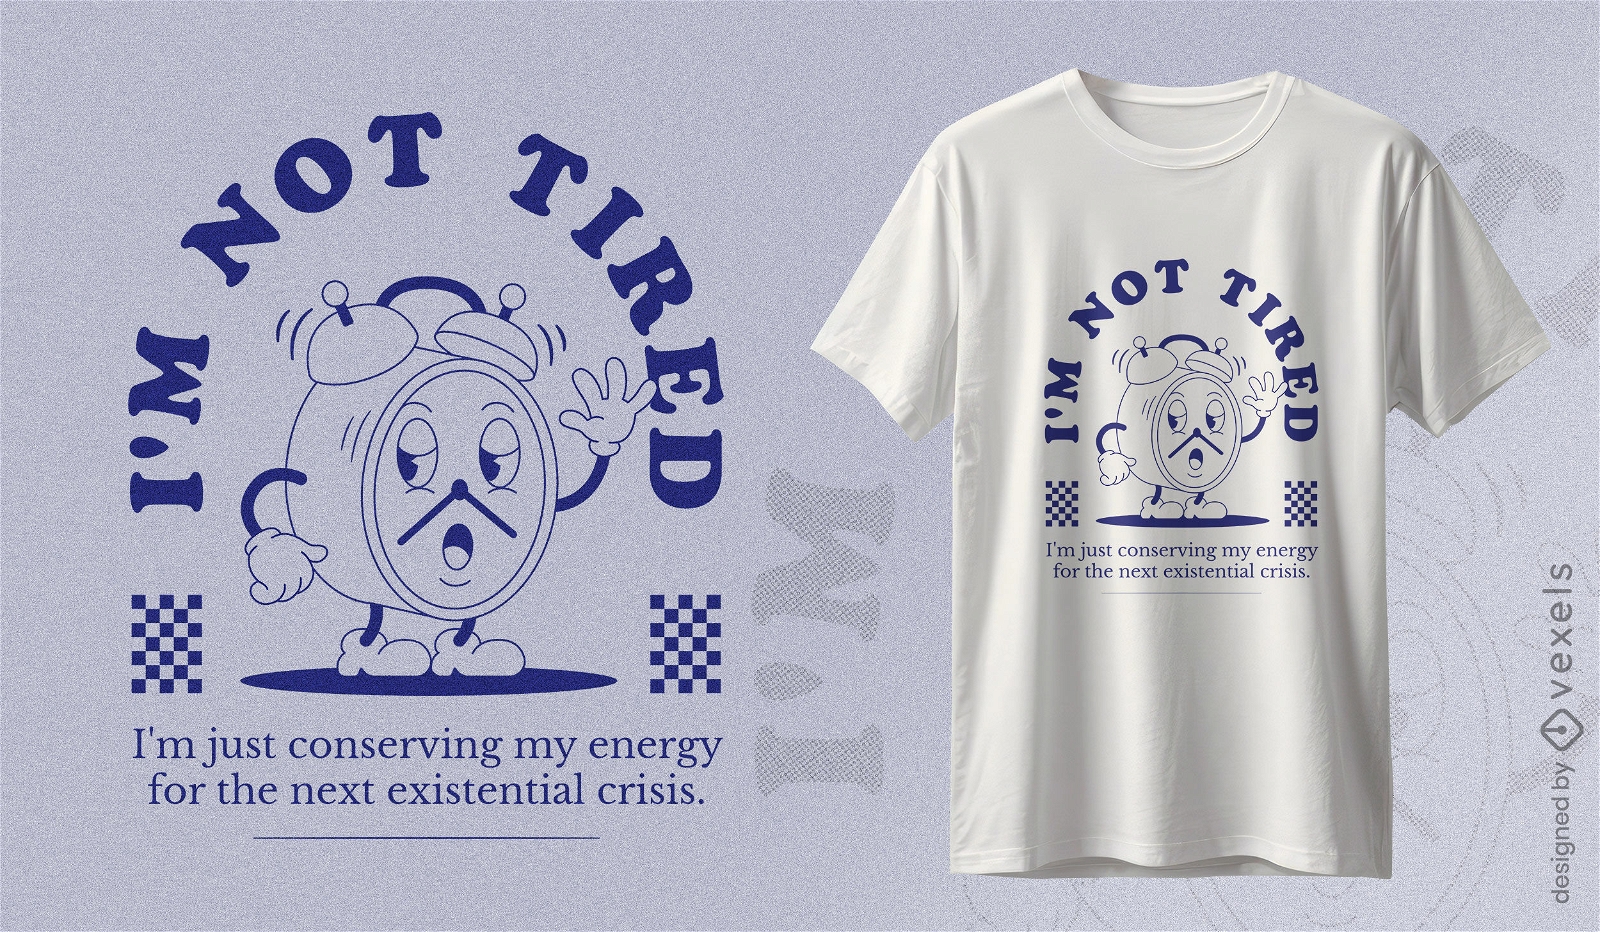 Dise?o de camiseta de energ?a existencial.